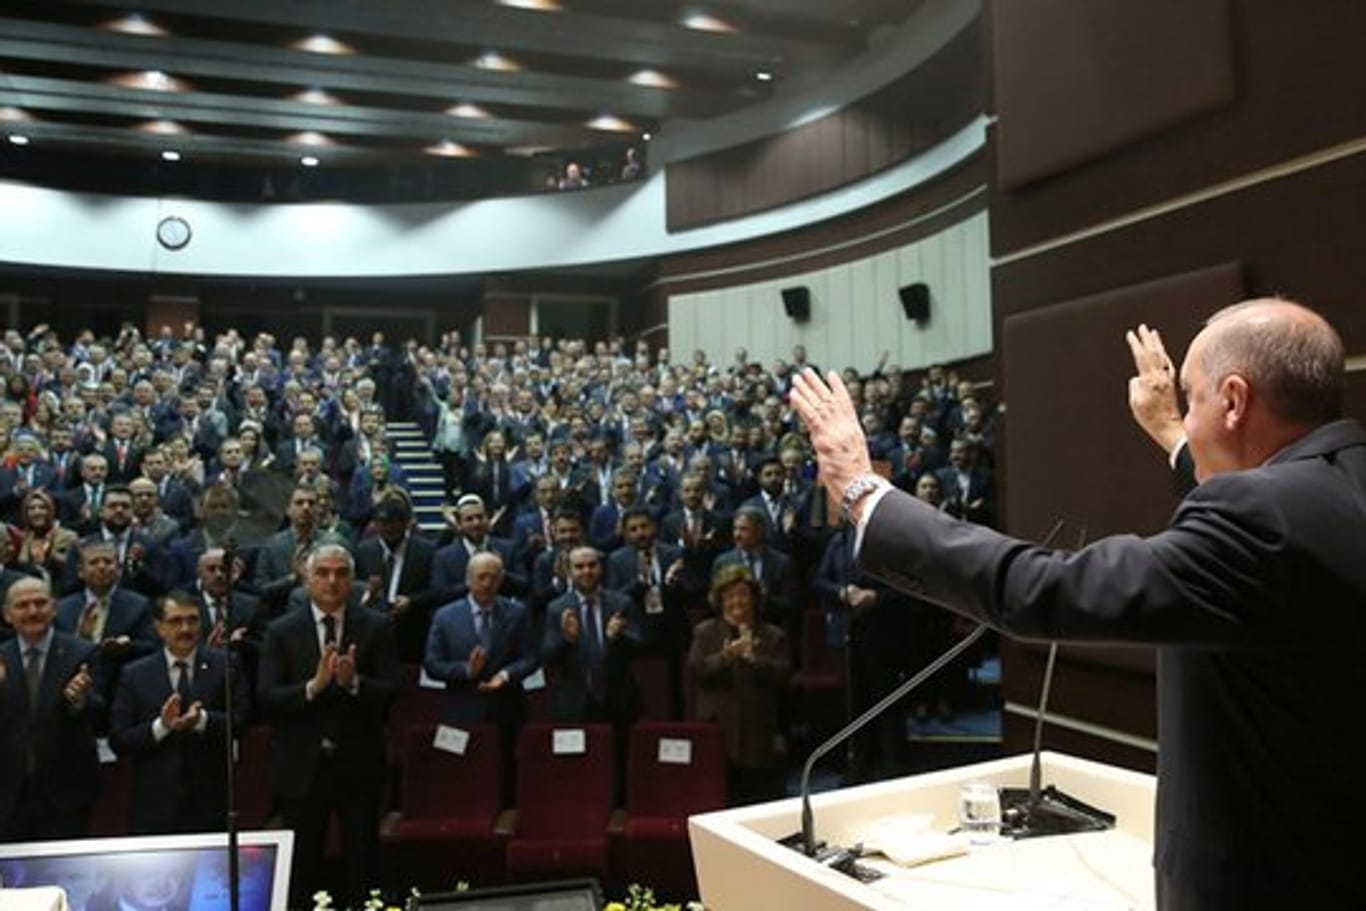 Recep Tayyip Erdogan, Präsident der Türkei, begrüßt Mitglieder der Regierungspartei AKP während eines Treffens in Ankara.